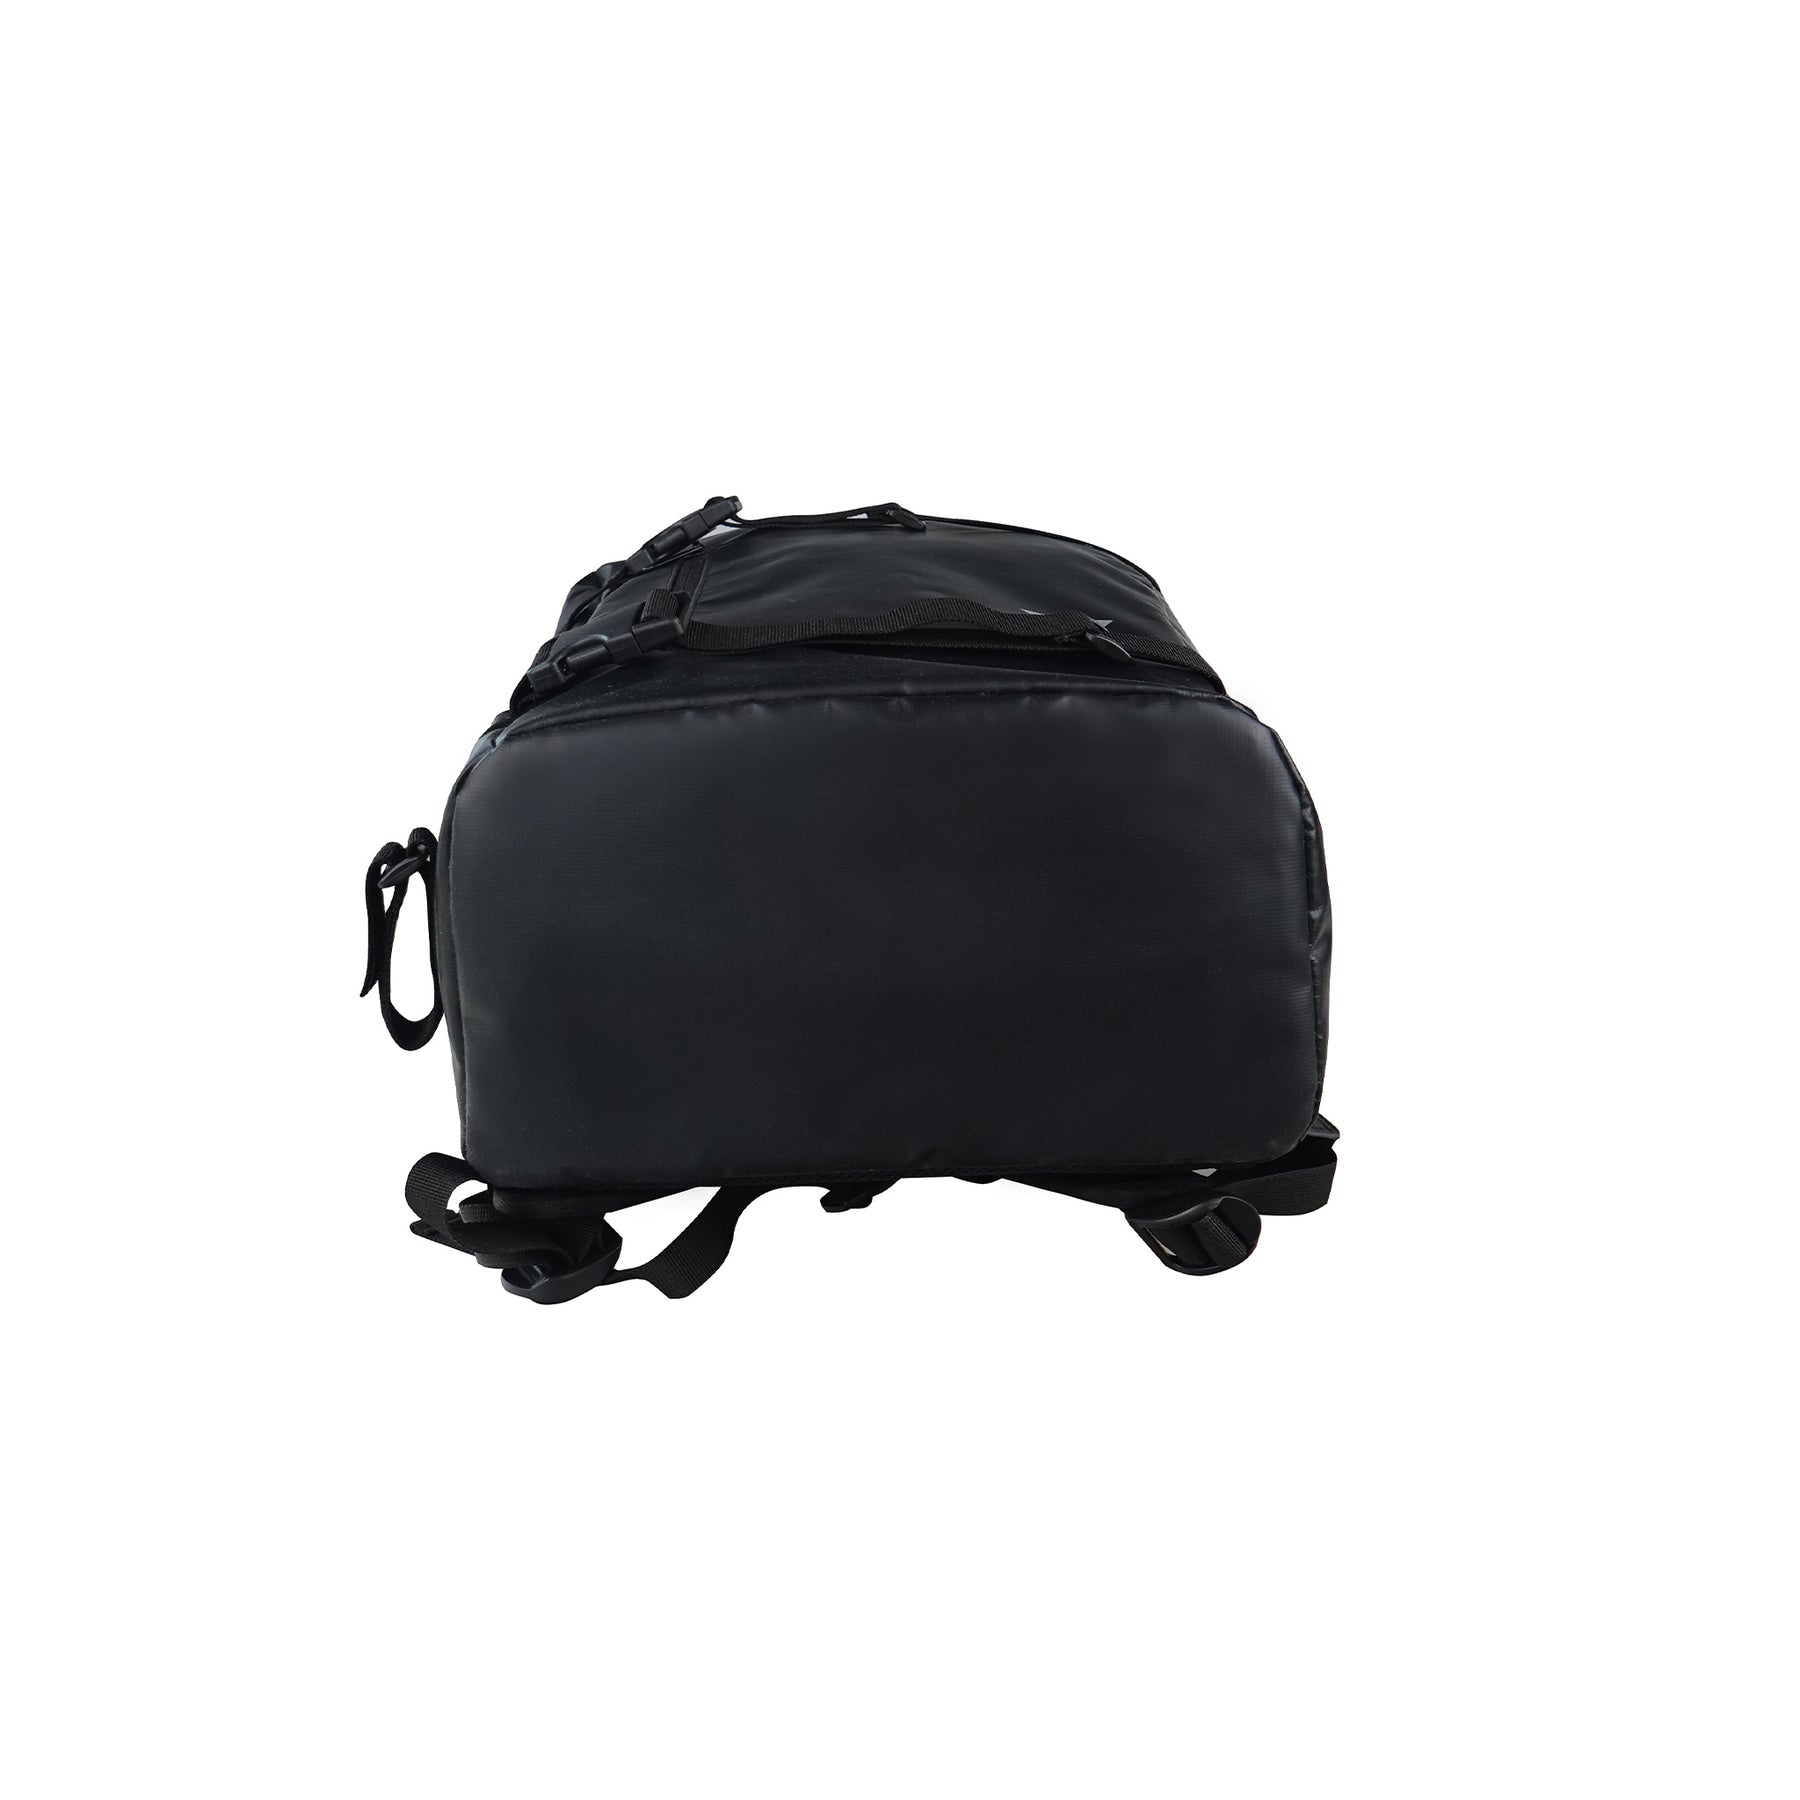 Y1 Ranger Backpack: Black